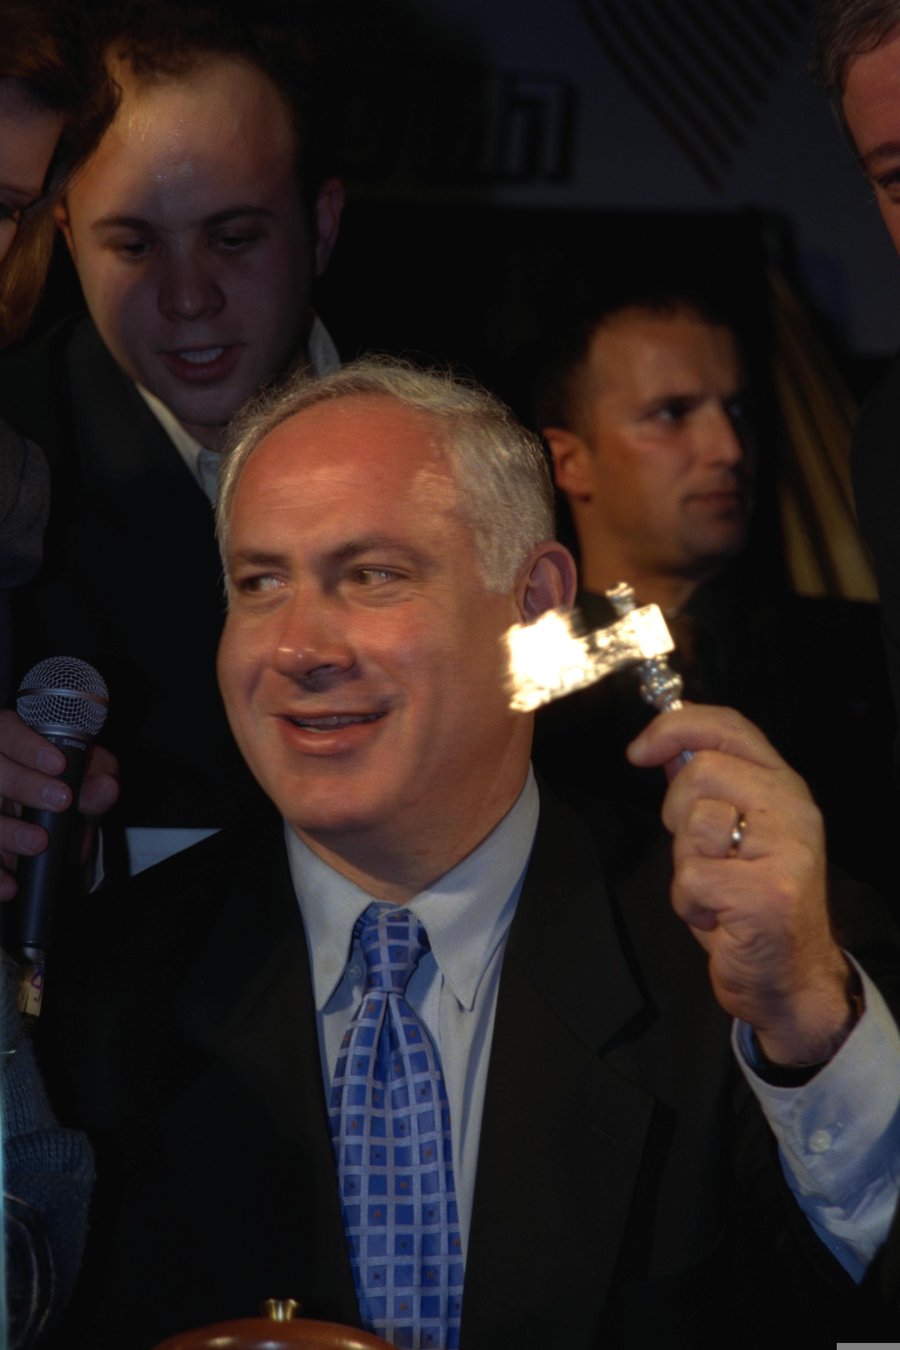 1999 - ראש הממשלה בנימין נתניהו מסובב "רעשן" במסיבת פורים שנערכה לילדים חולי סרטן בבנייני האומה בירושלים